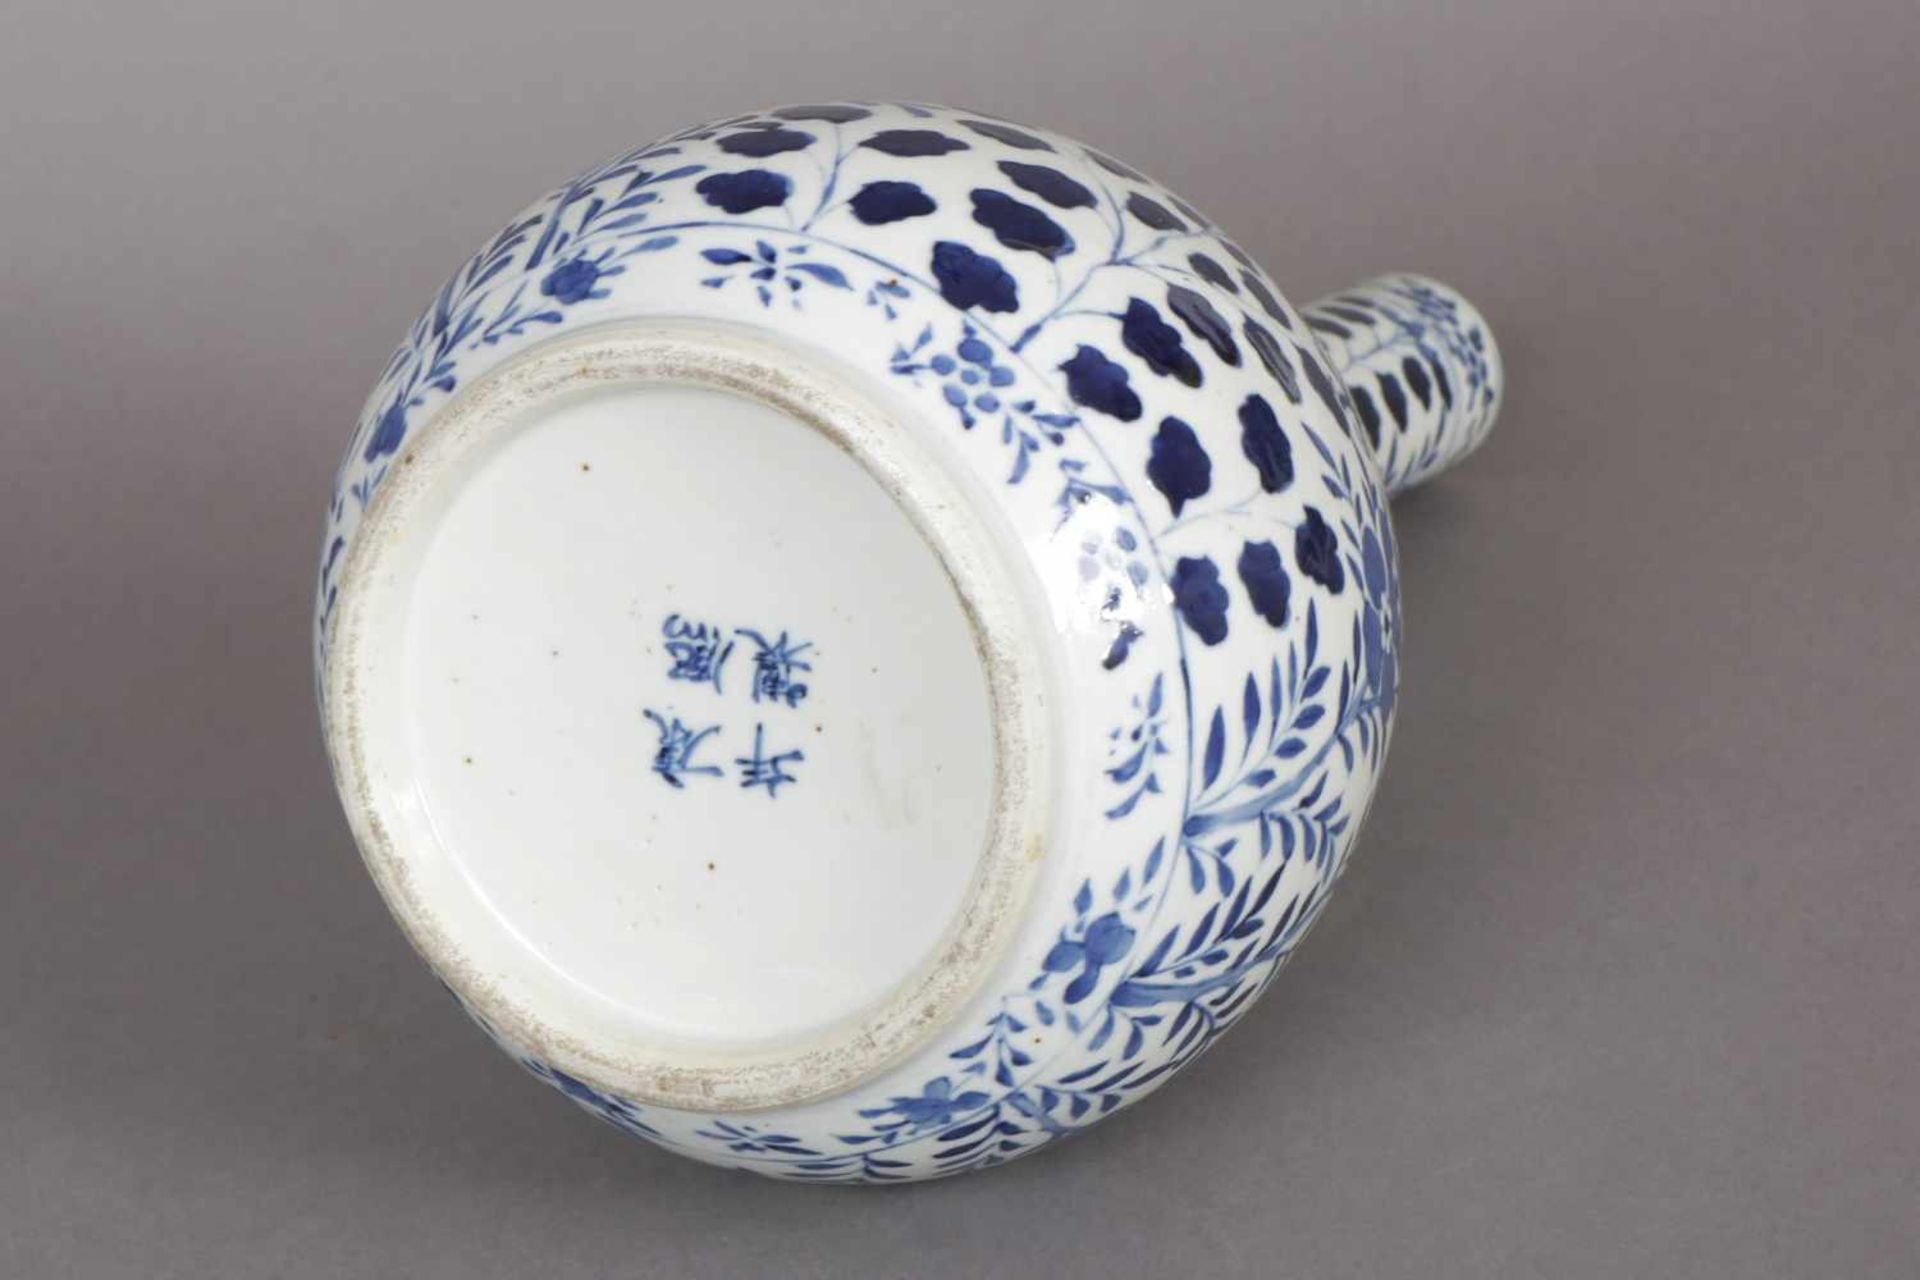 Chinesische Keulenvase im Stile Ming Porzellan, Drachen- und Floraldekor in Blaumalerei, runder - Image 2 of 2